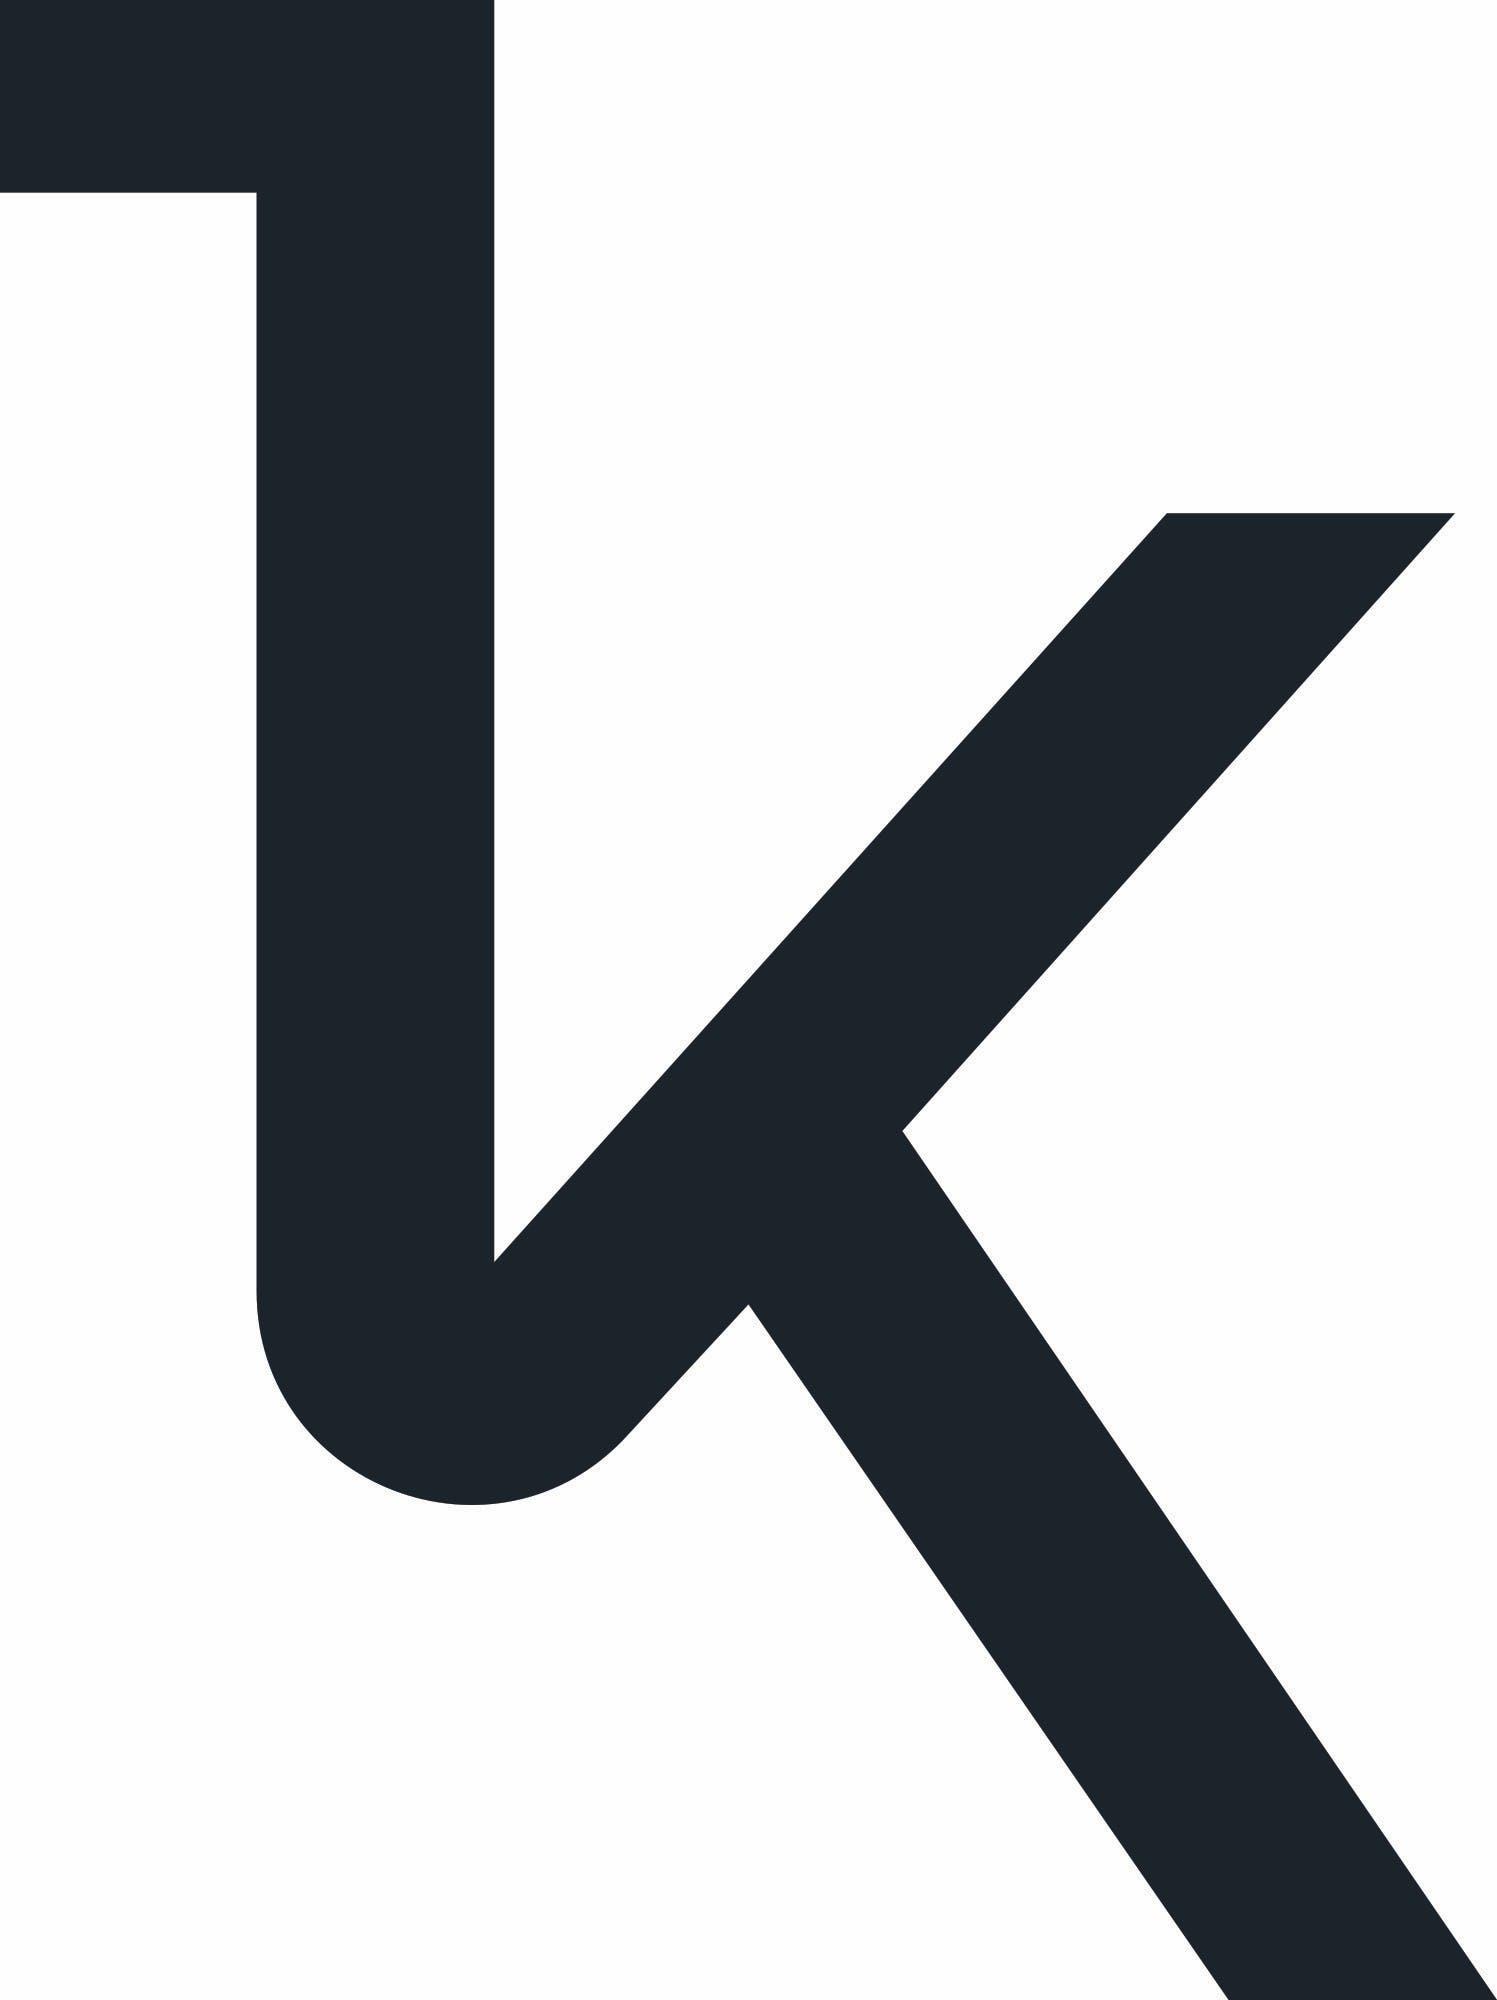 Kernel logo